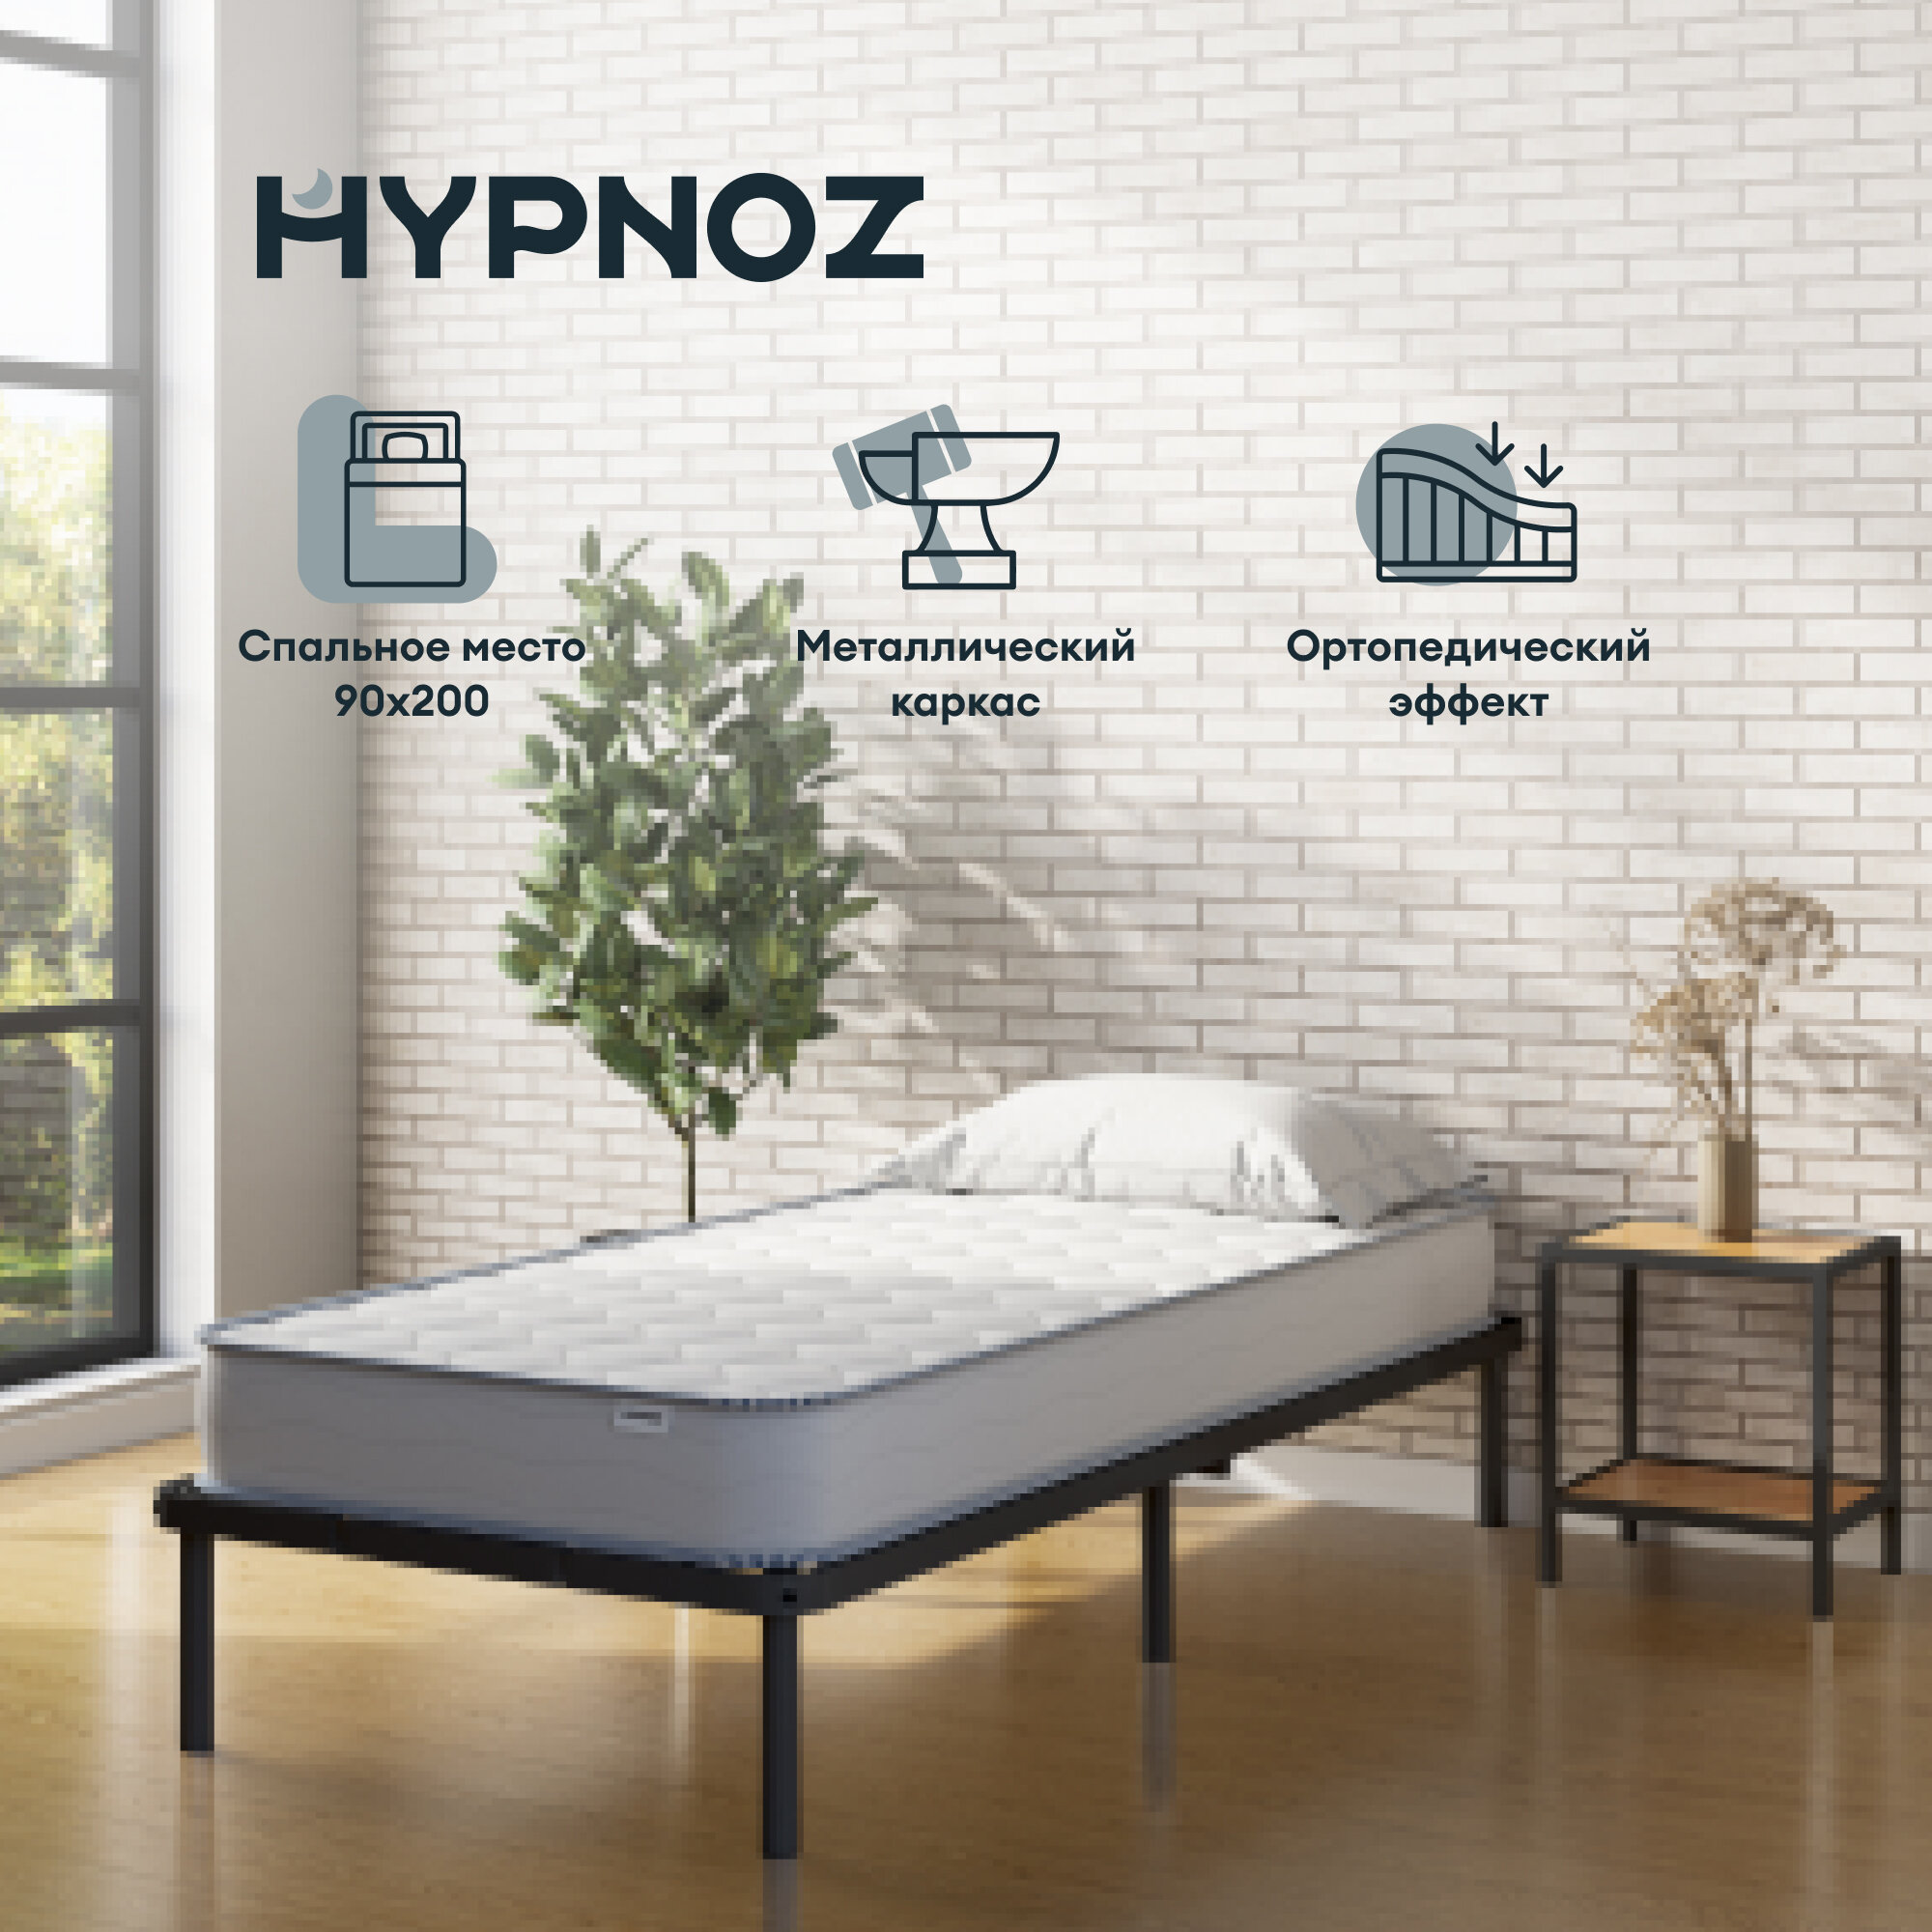 Кровать HYPNOZ Frame 200x90, черная